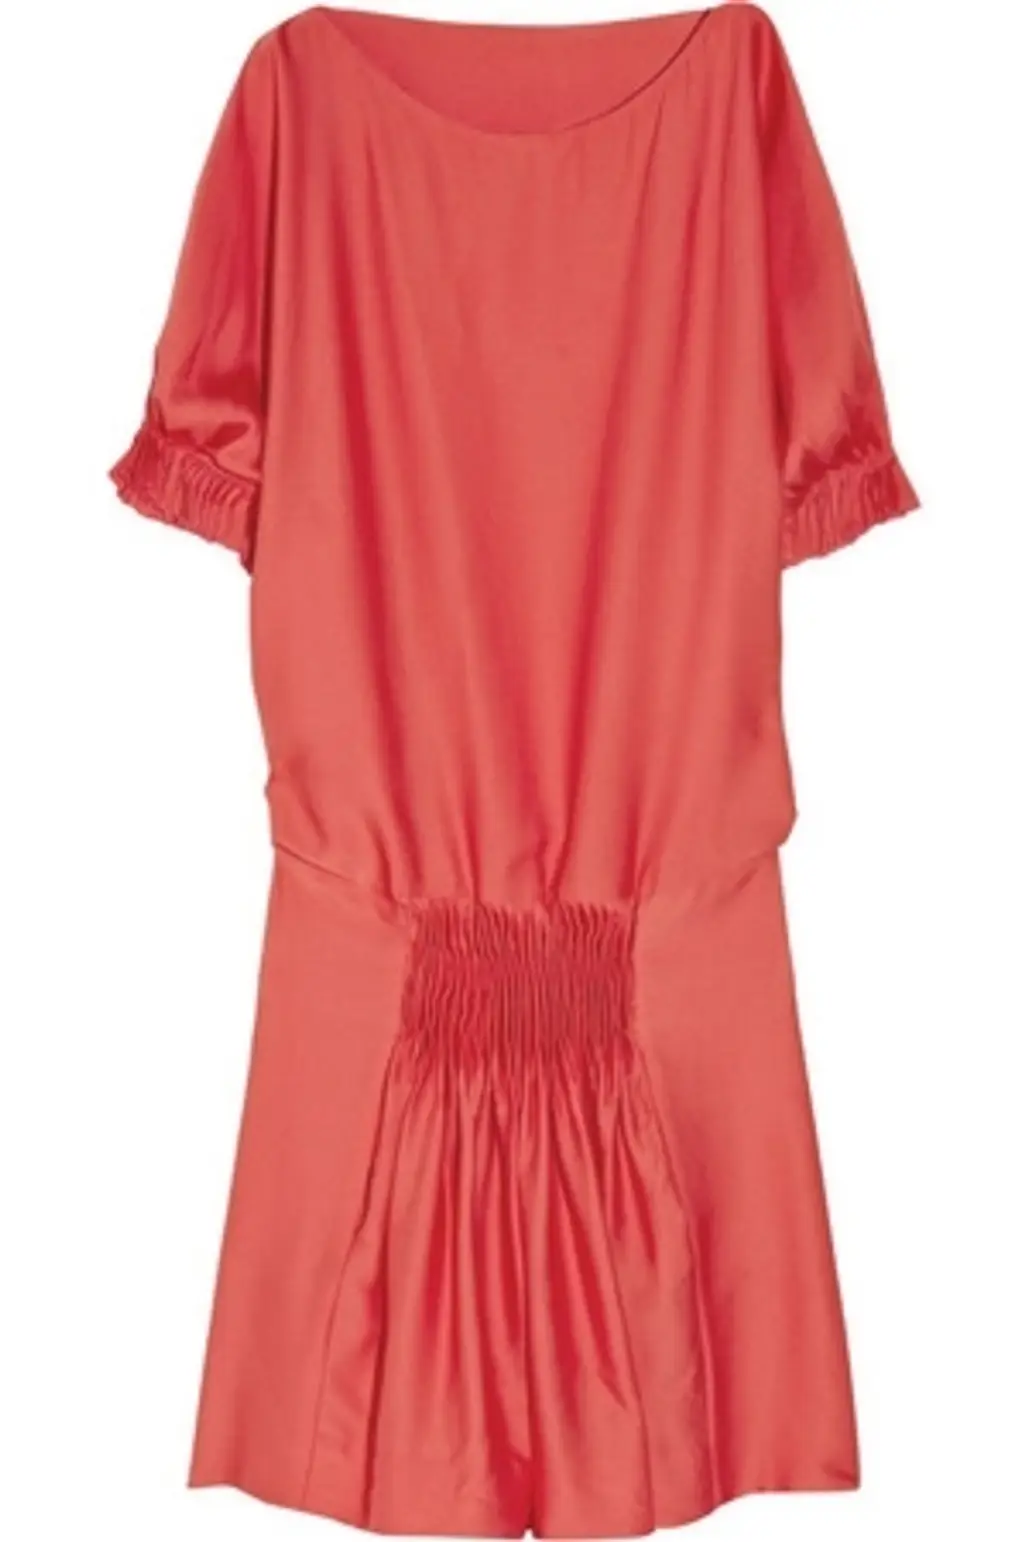 Diane Von Furstenberg Coral Dress